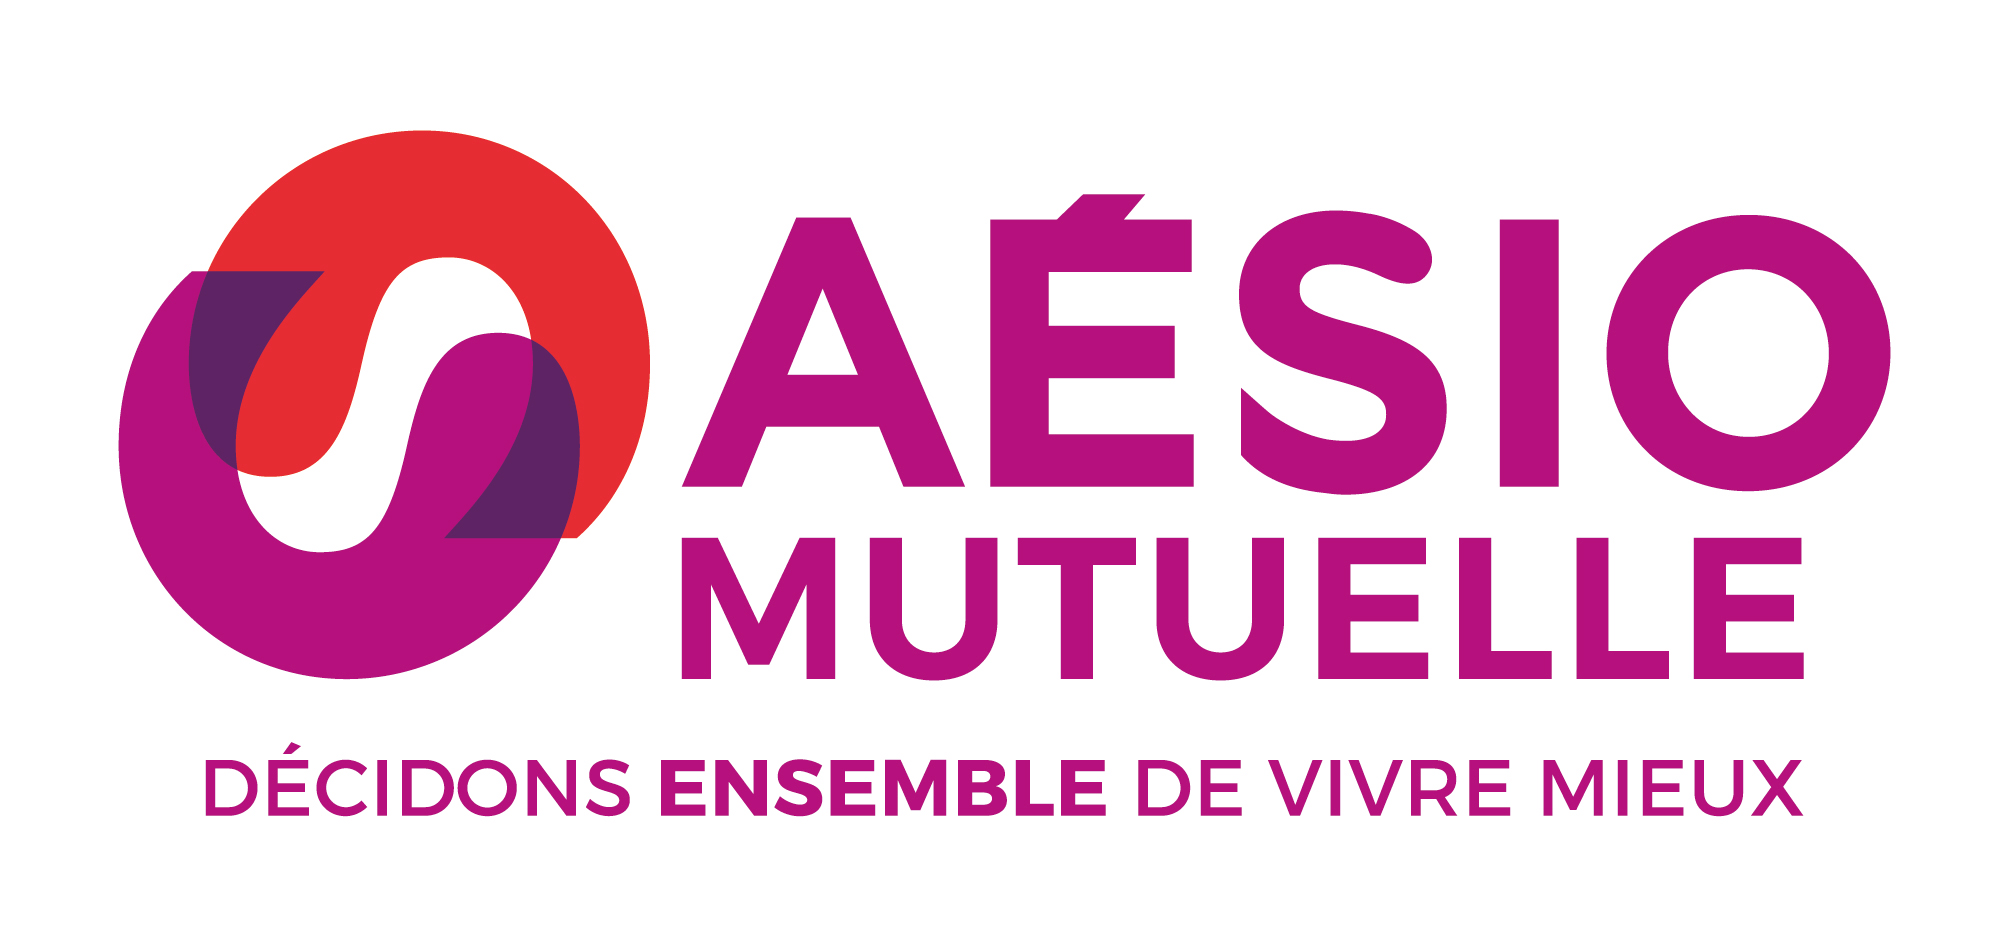 Logo_AESIO_MUTUELLE